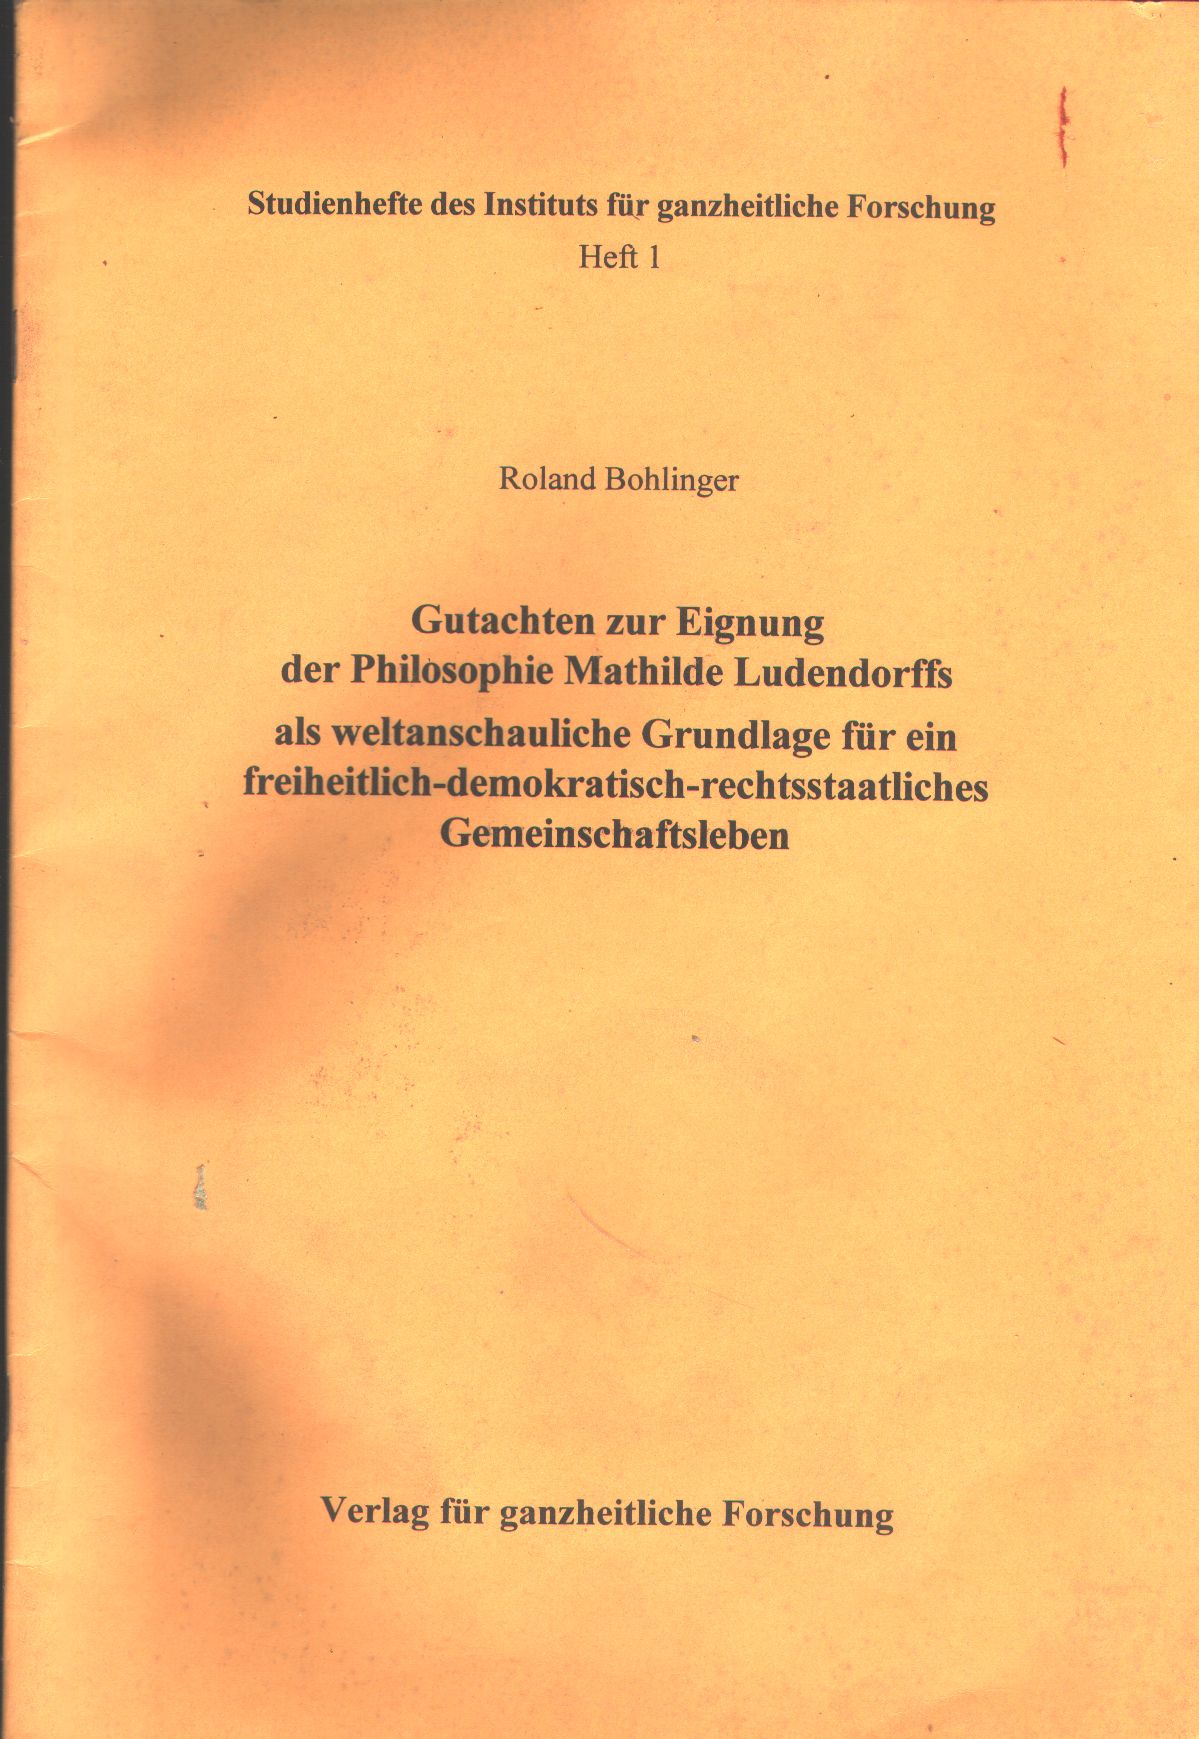 Roland Bohlinger  Gutachten zur Eignung der Philosophie Mathilde Ludendorffs als weltanschauliche Grundlage für ein freiheitlich-demokratisch-rechtsstaatliches Gemeinschaftsleben 